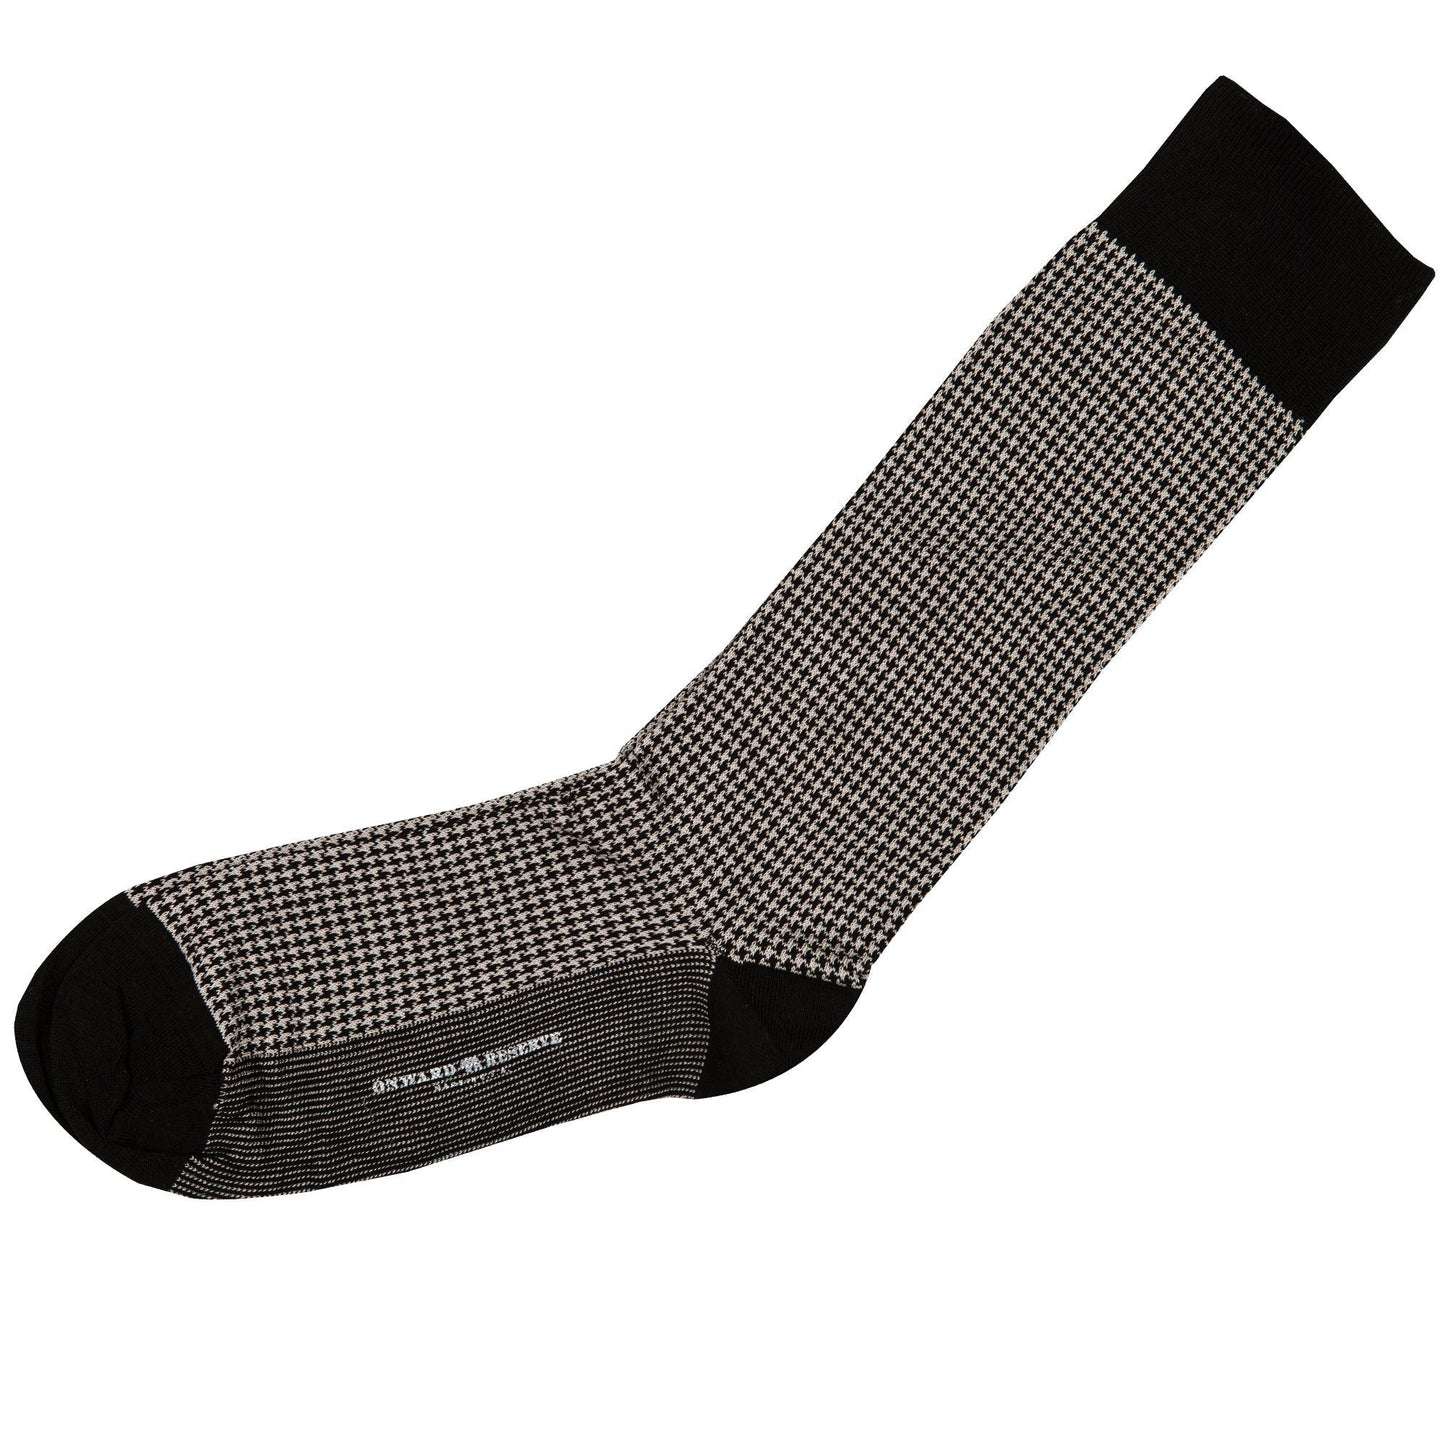 Black & Ash Houndstooth Mid-Calf Cotton Socks - OnwardReserve